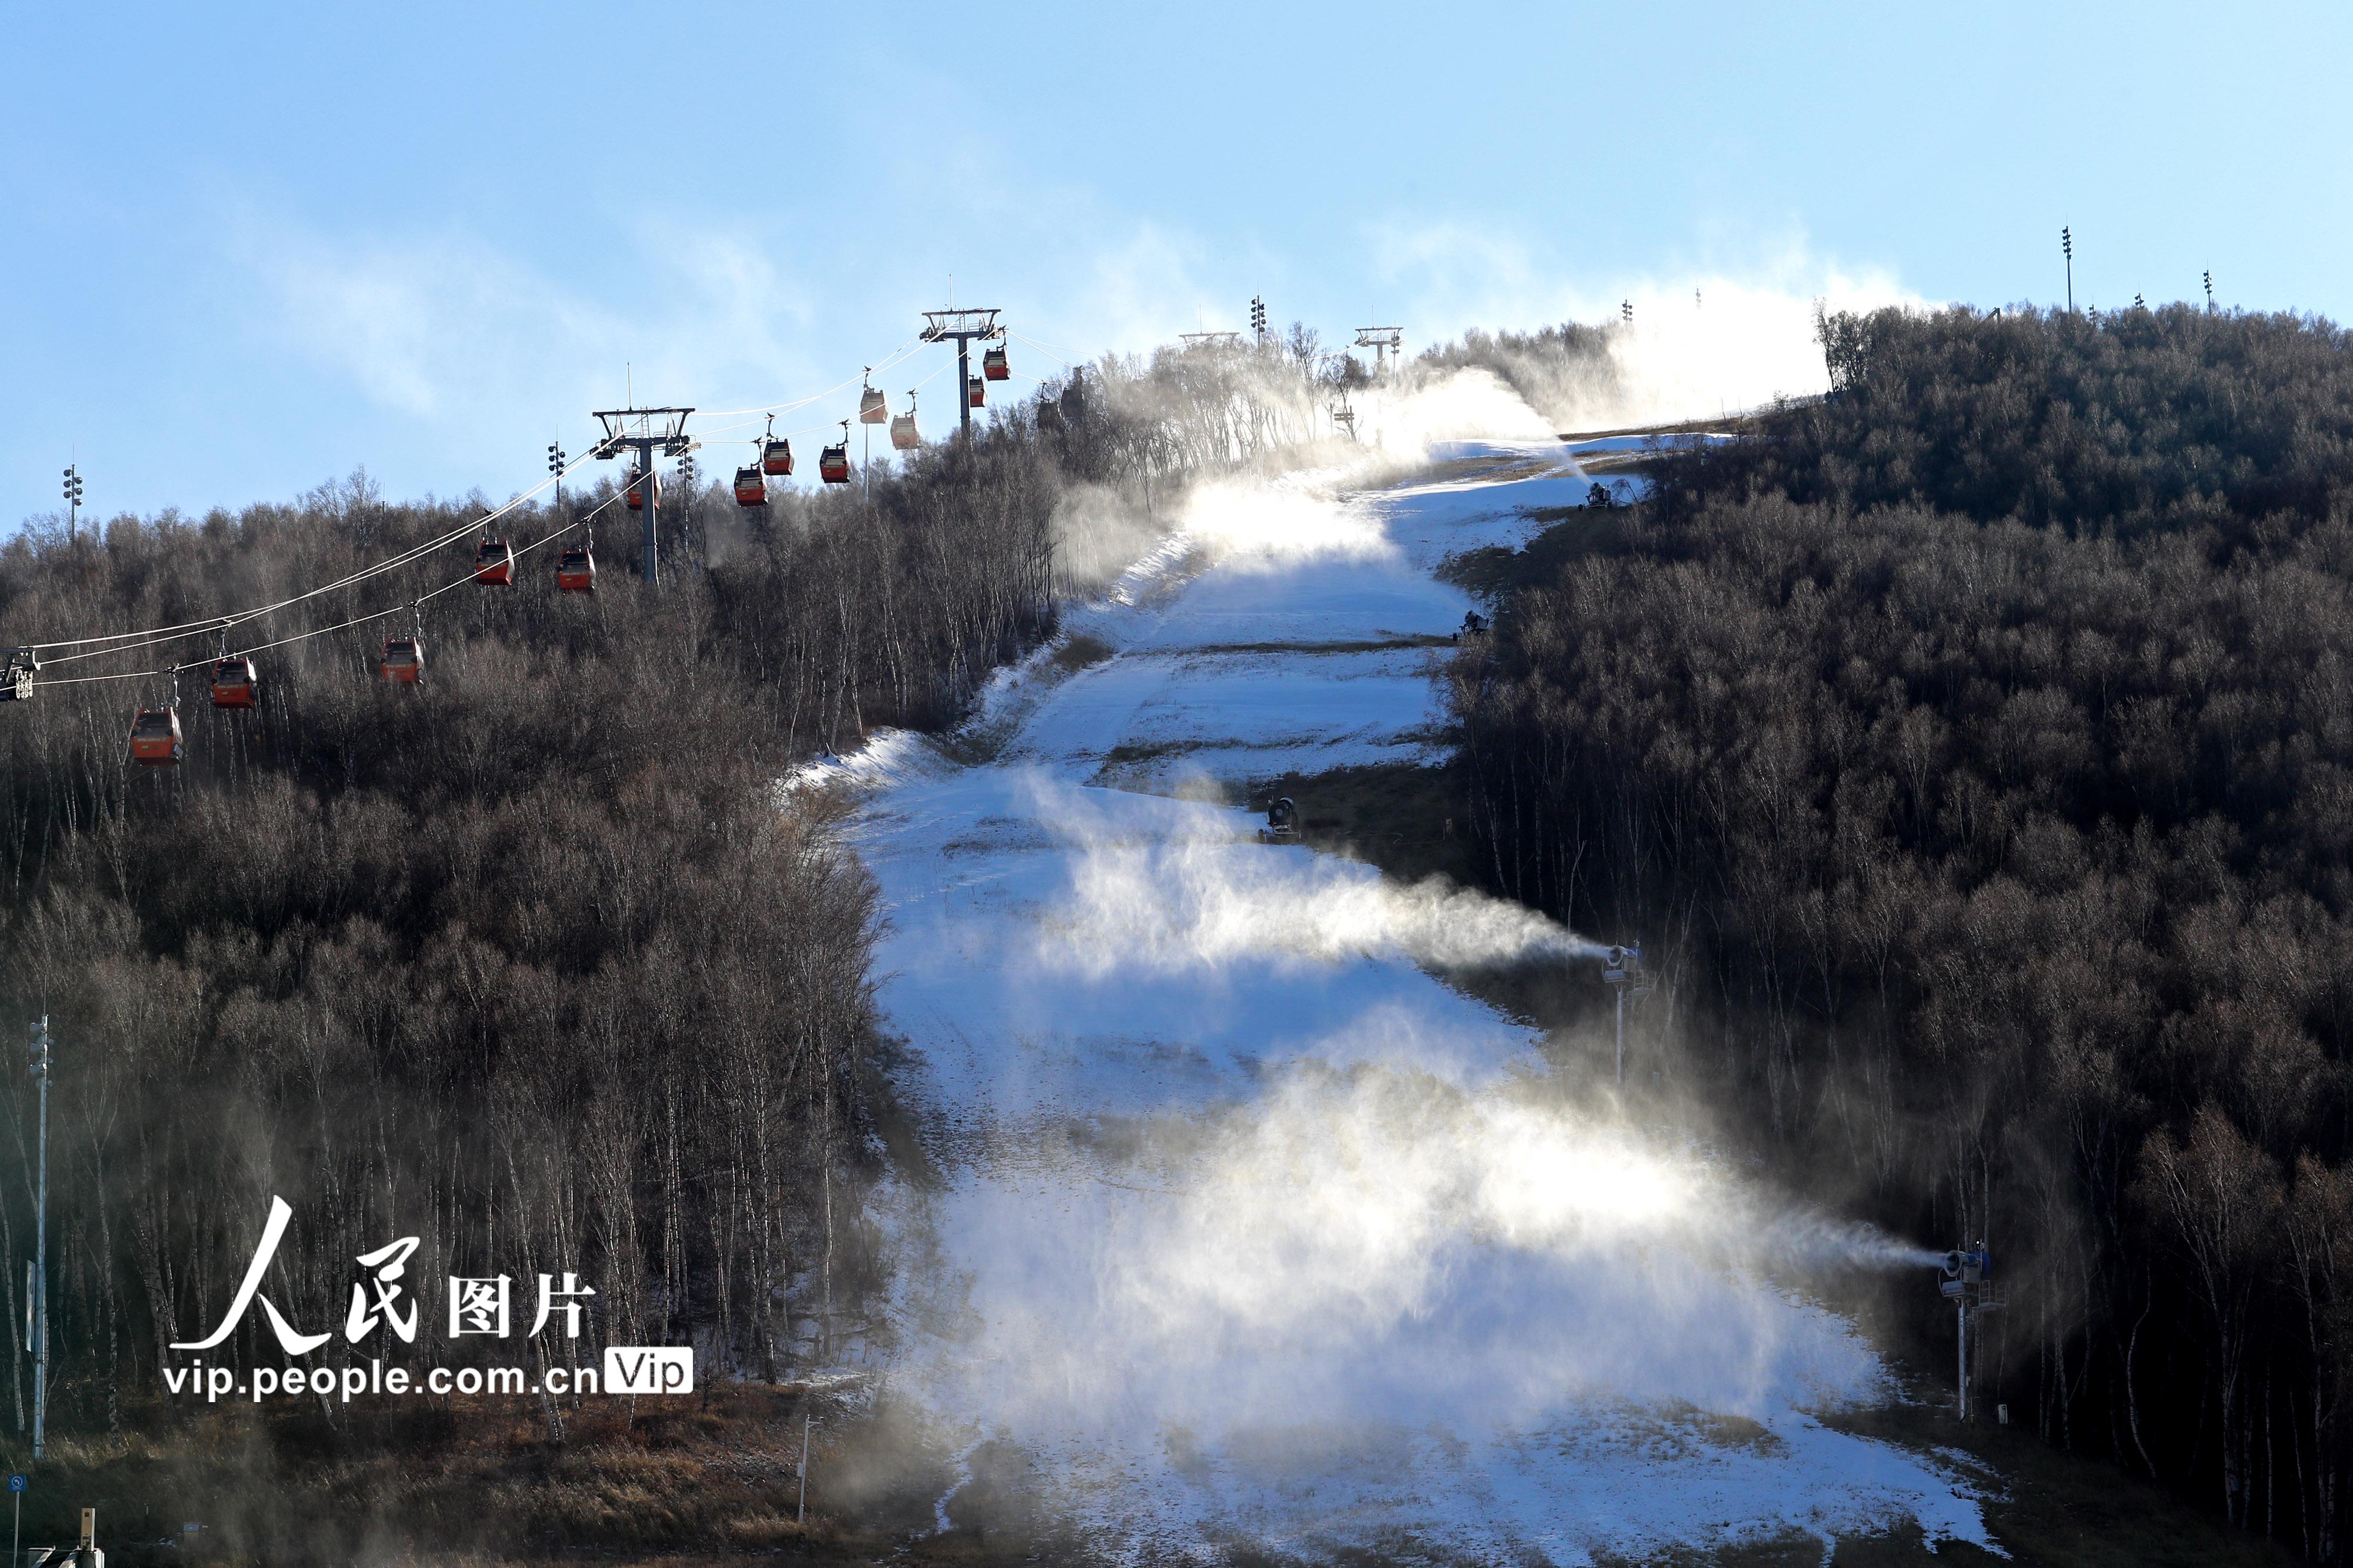 北京市内唯一雪上竞赛场馆——首钢滑雪大跳台正式造雪 - 北京事儿 - 新湖南